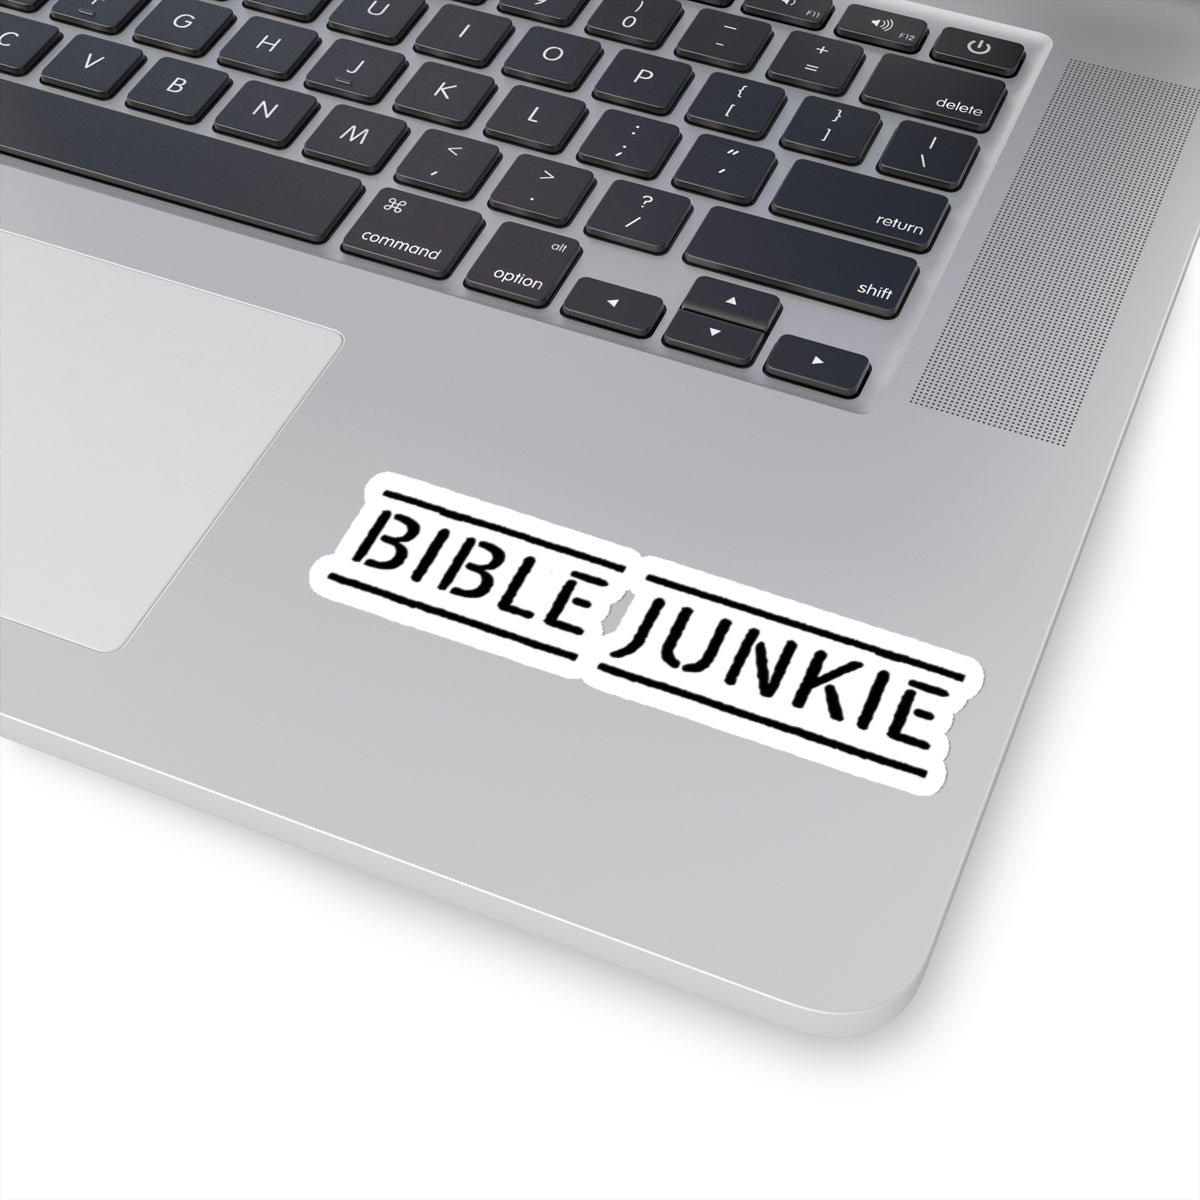 BIBLE JUNKIE STICKER. Wear it. Share it. Gods Word. Bible Junkies.